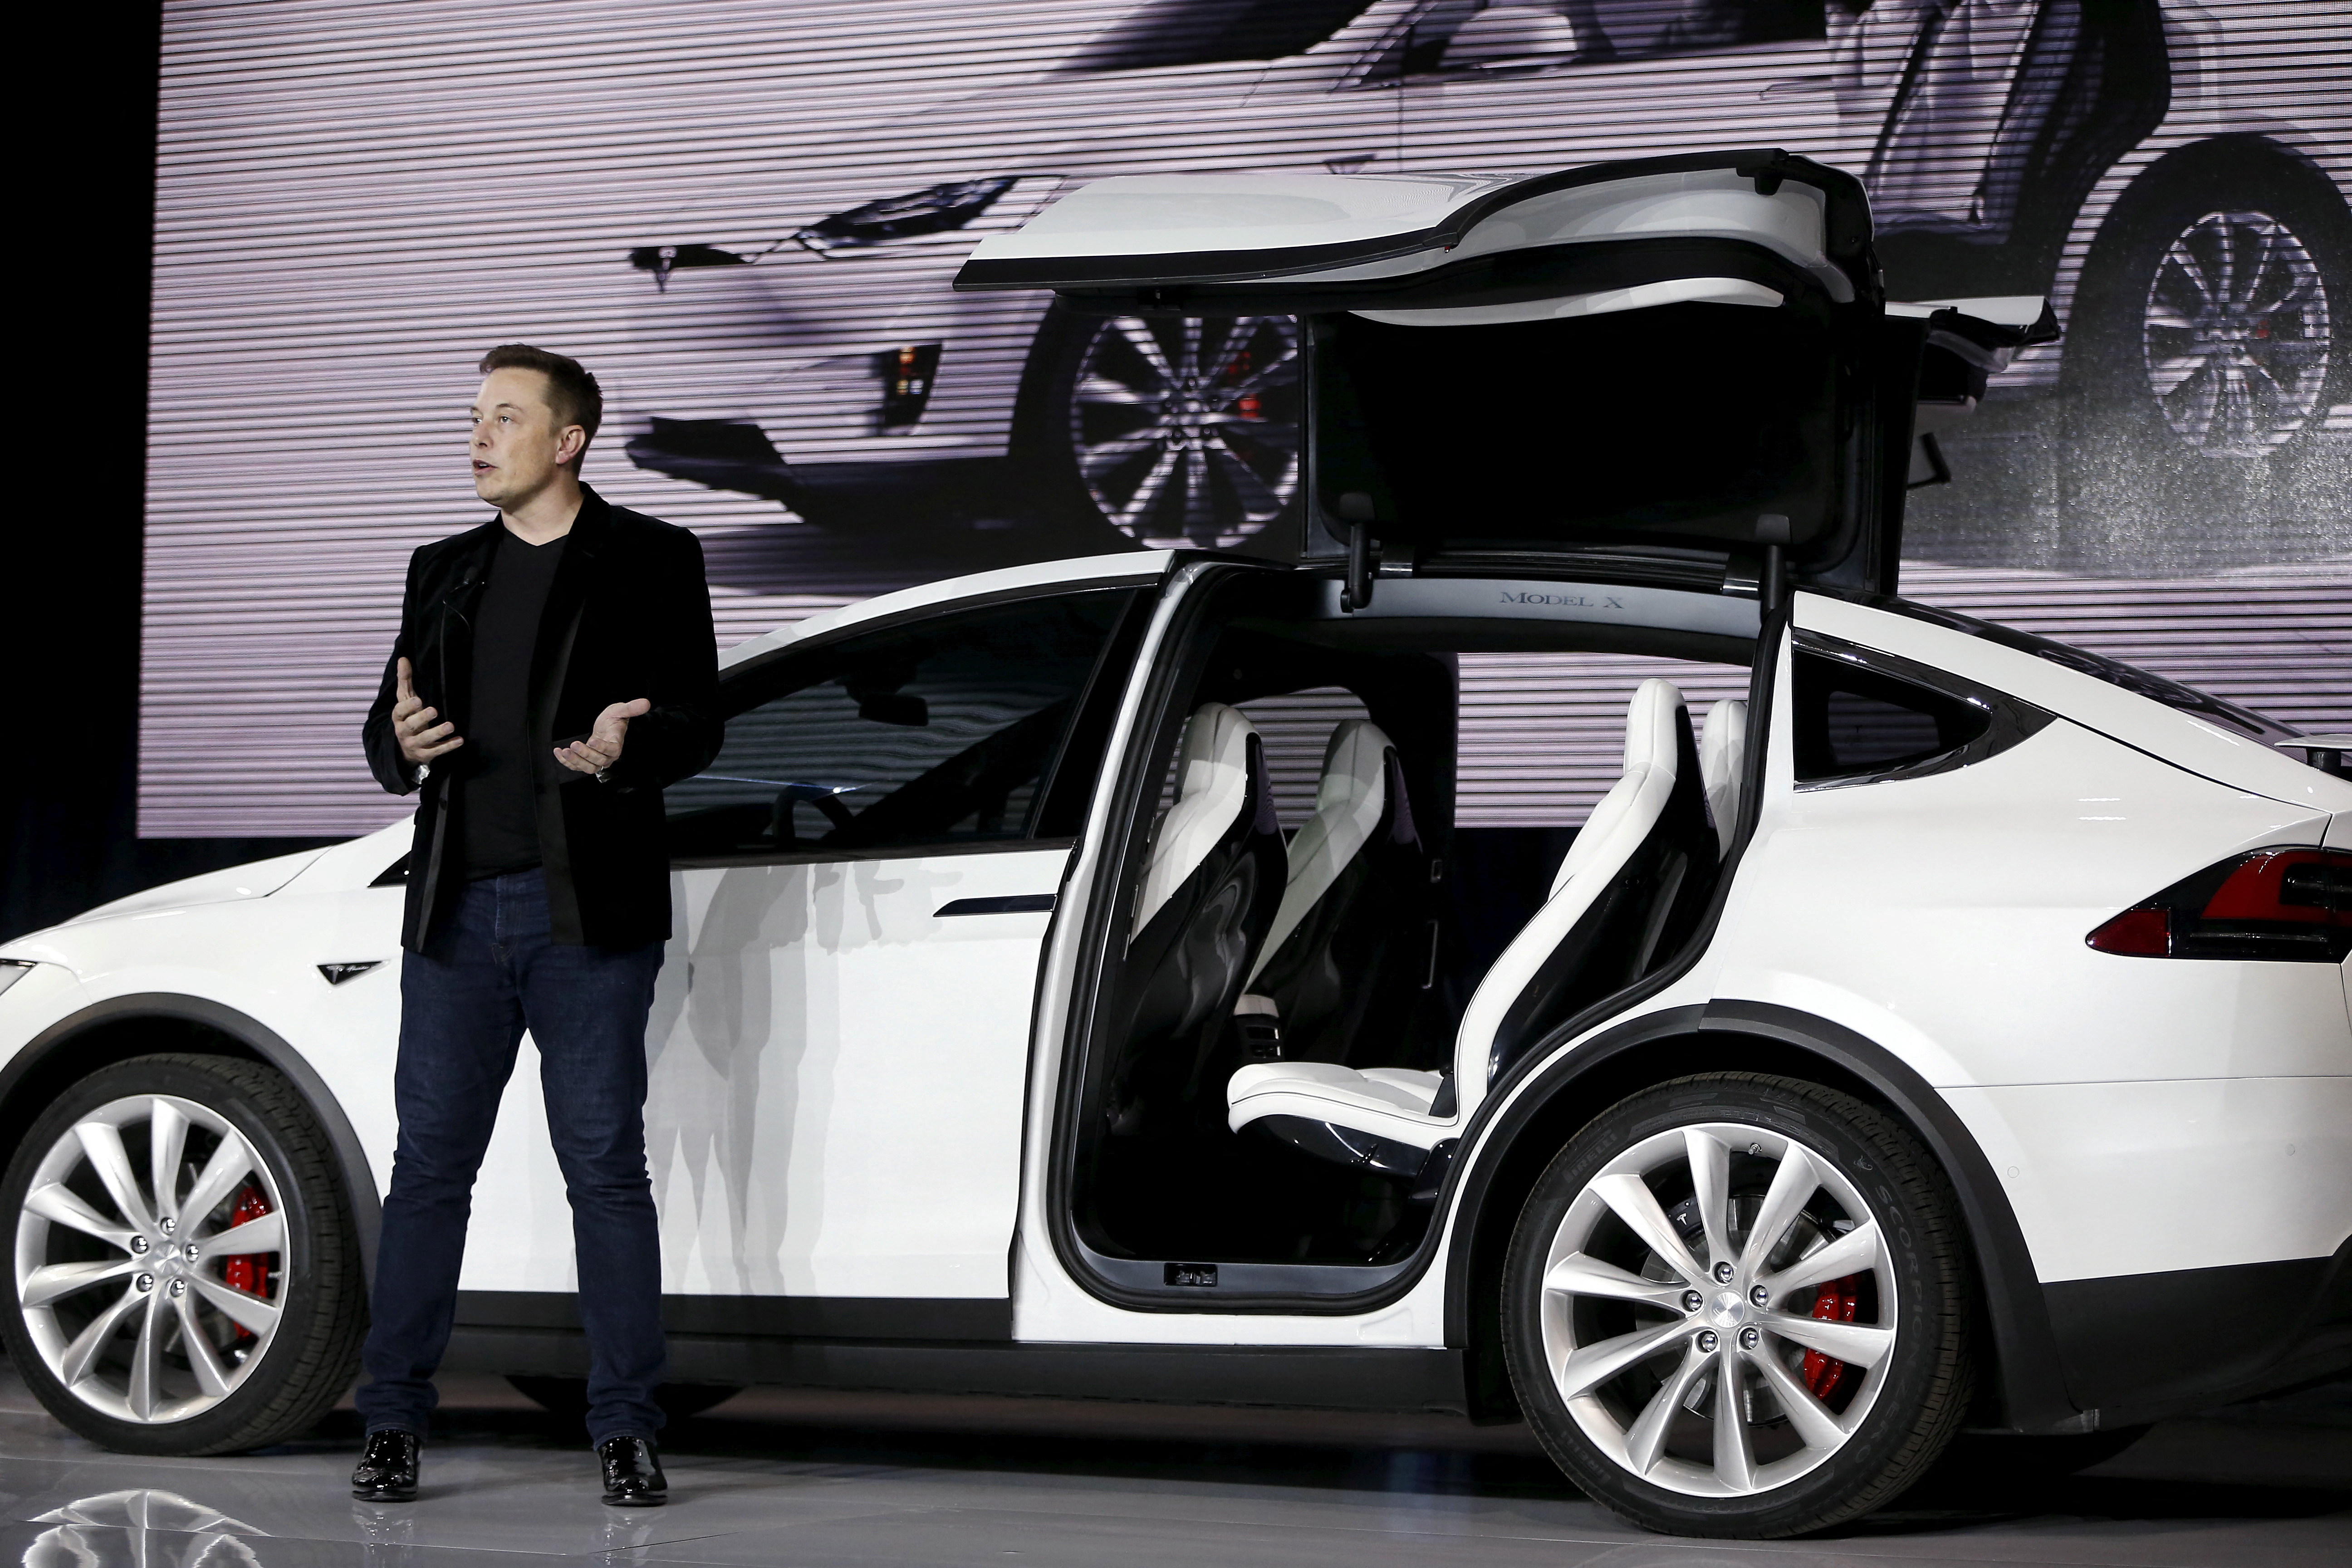 Le PDG de Tesla Motors, Elon Musk, a dévoilé le SUV électrique Model X lors d'une présentation à Fremont, en Californie.